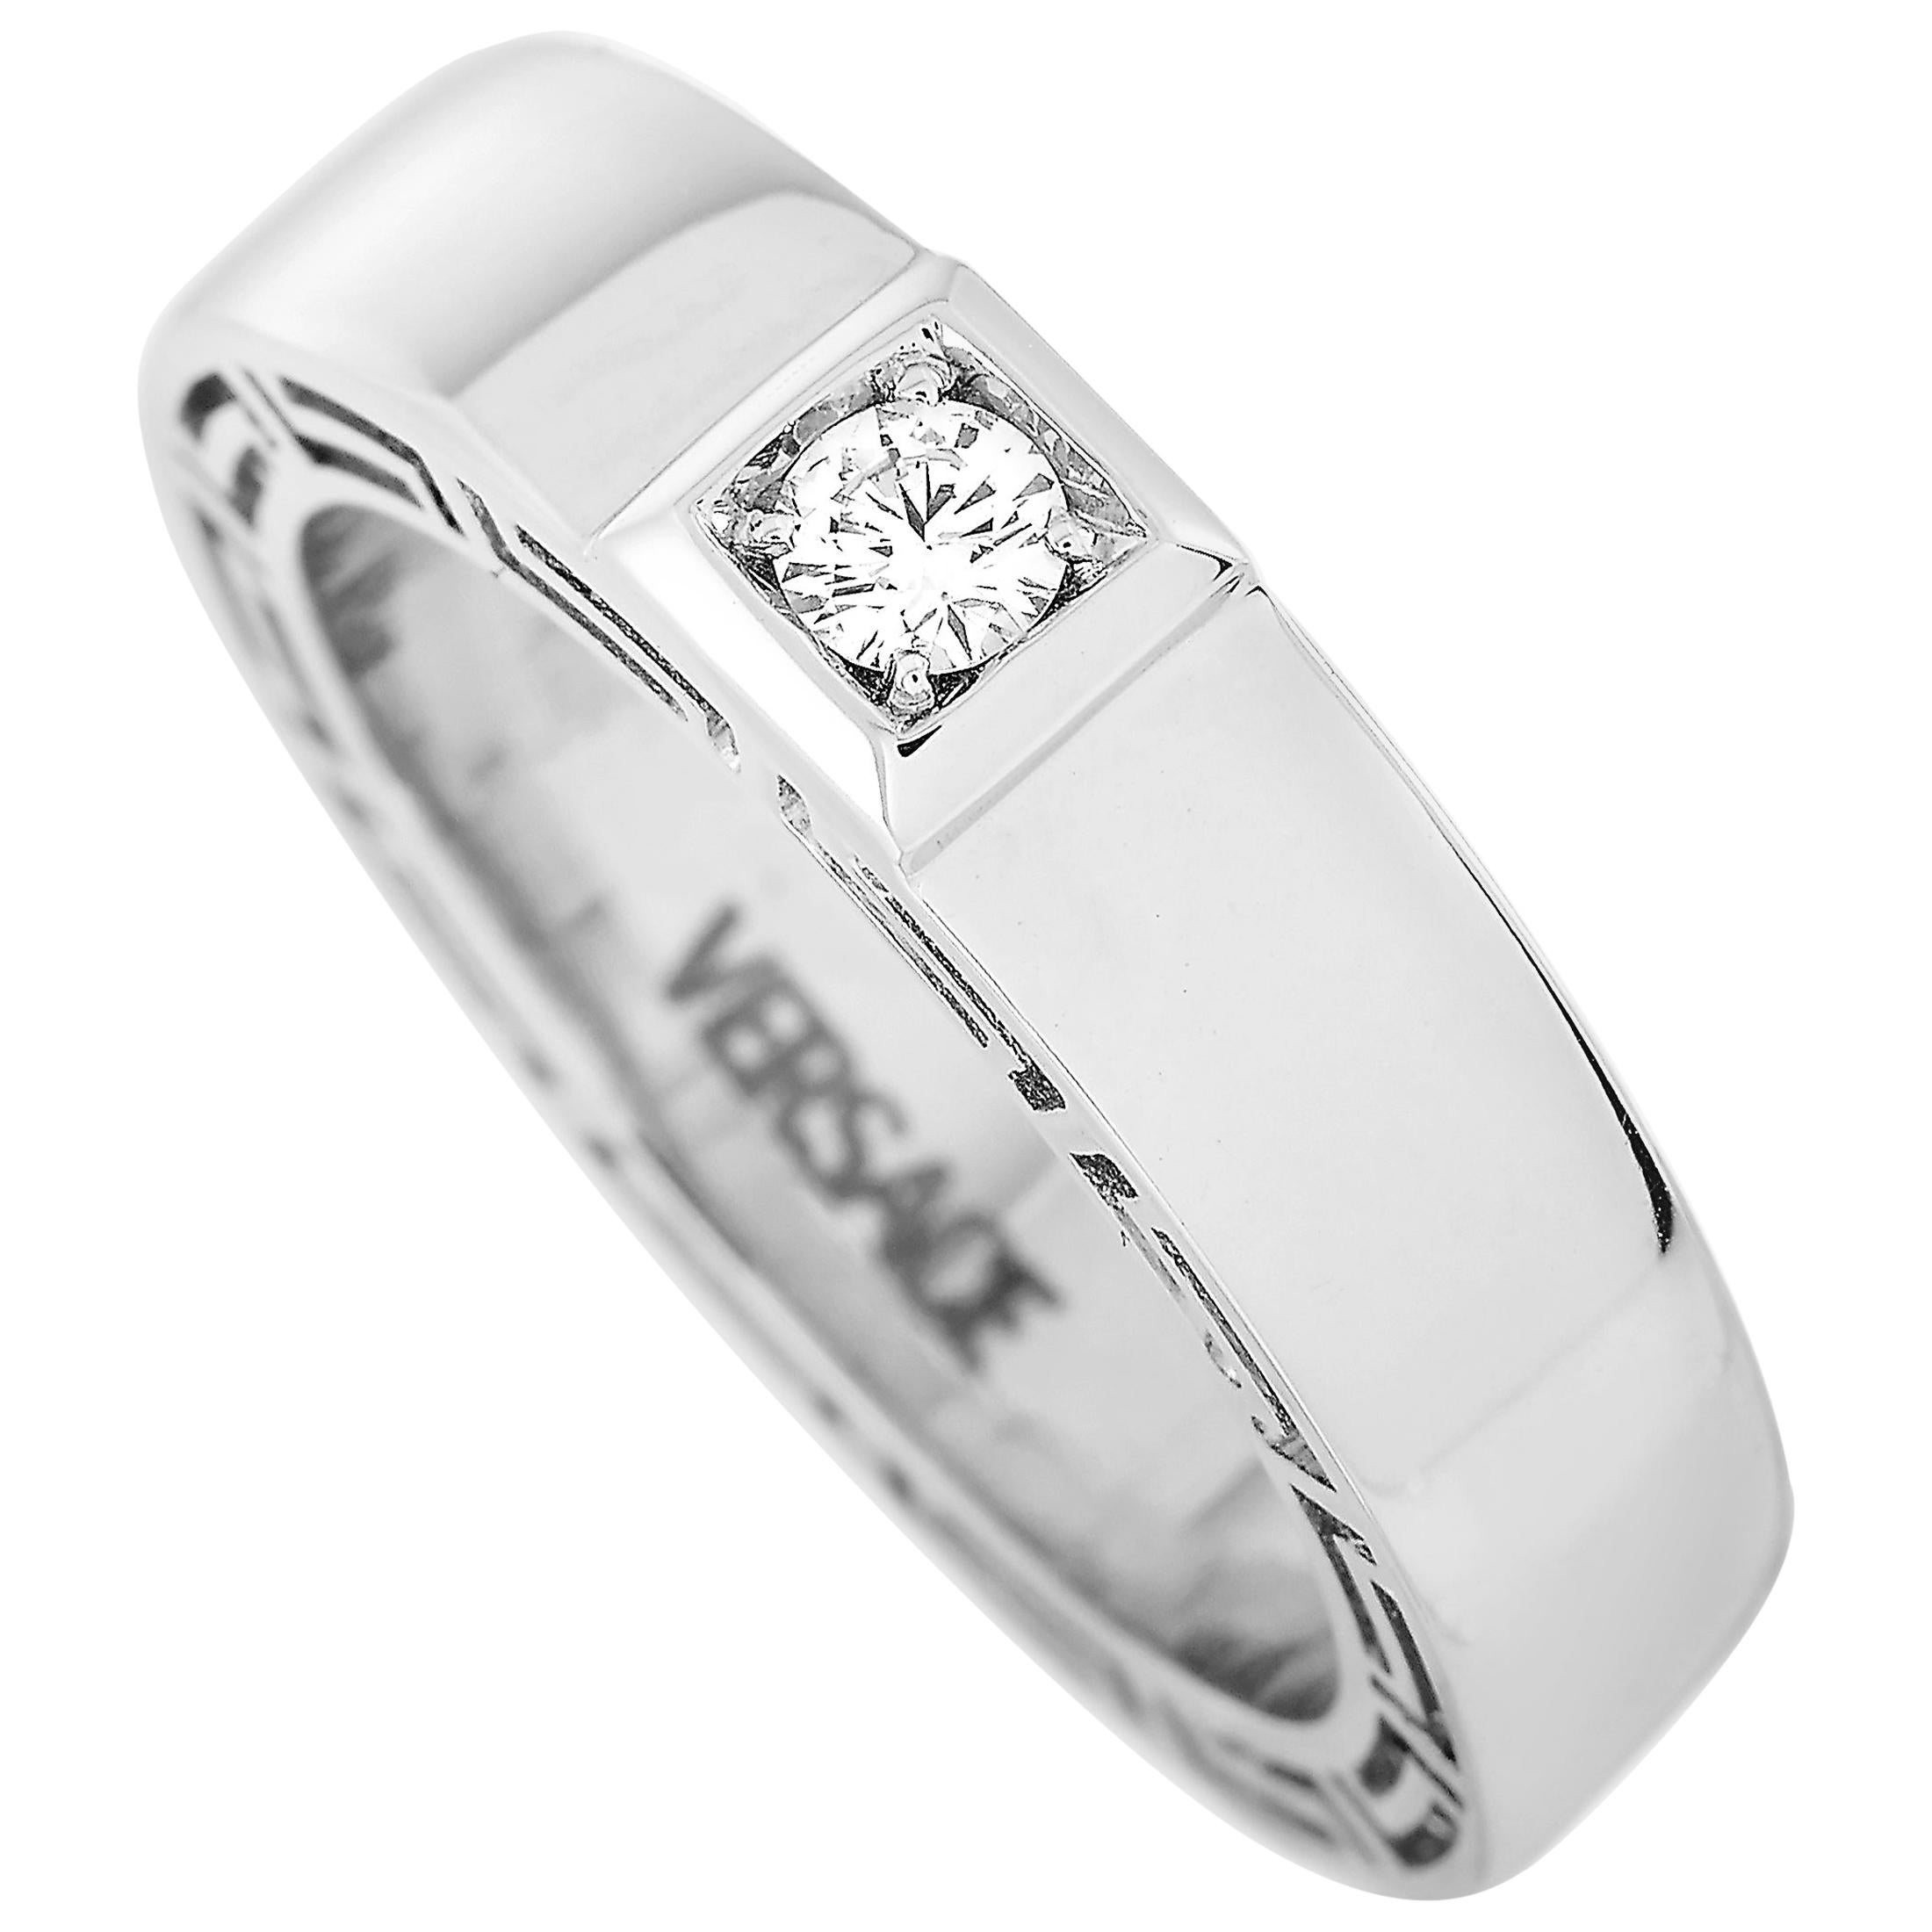 Versace 18 Karat White Gold 0.15 Carat Diamond Band Ring